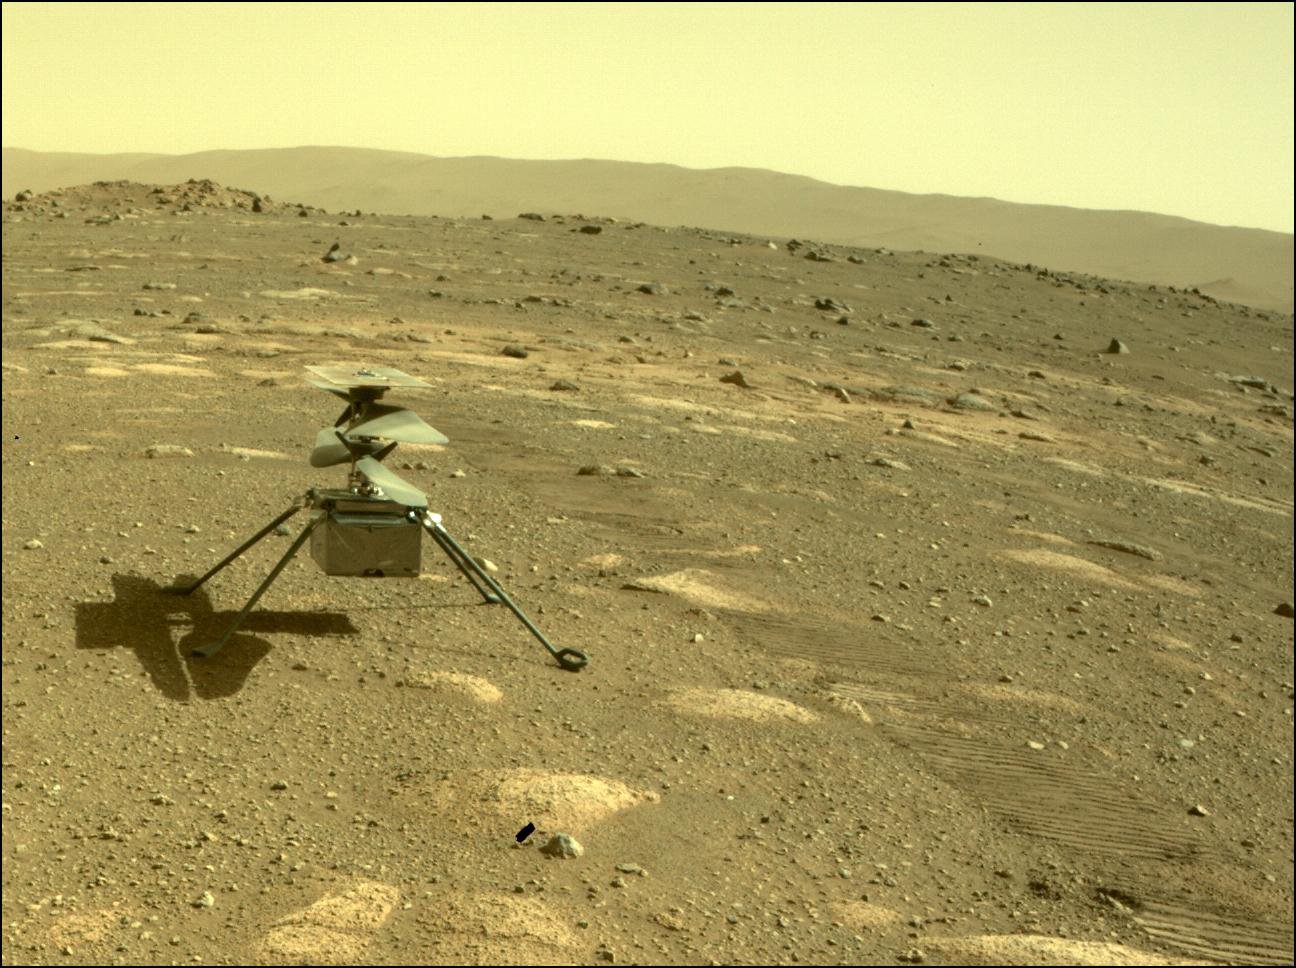 Uma fotografia tirada pelo rover Perseverance do helicóptero Ingenuity na superfície de Marte em abril, logo após o rover lançar o helicóptero.